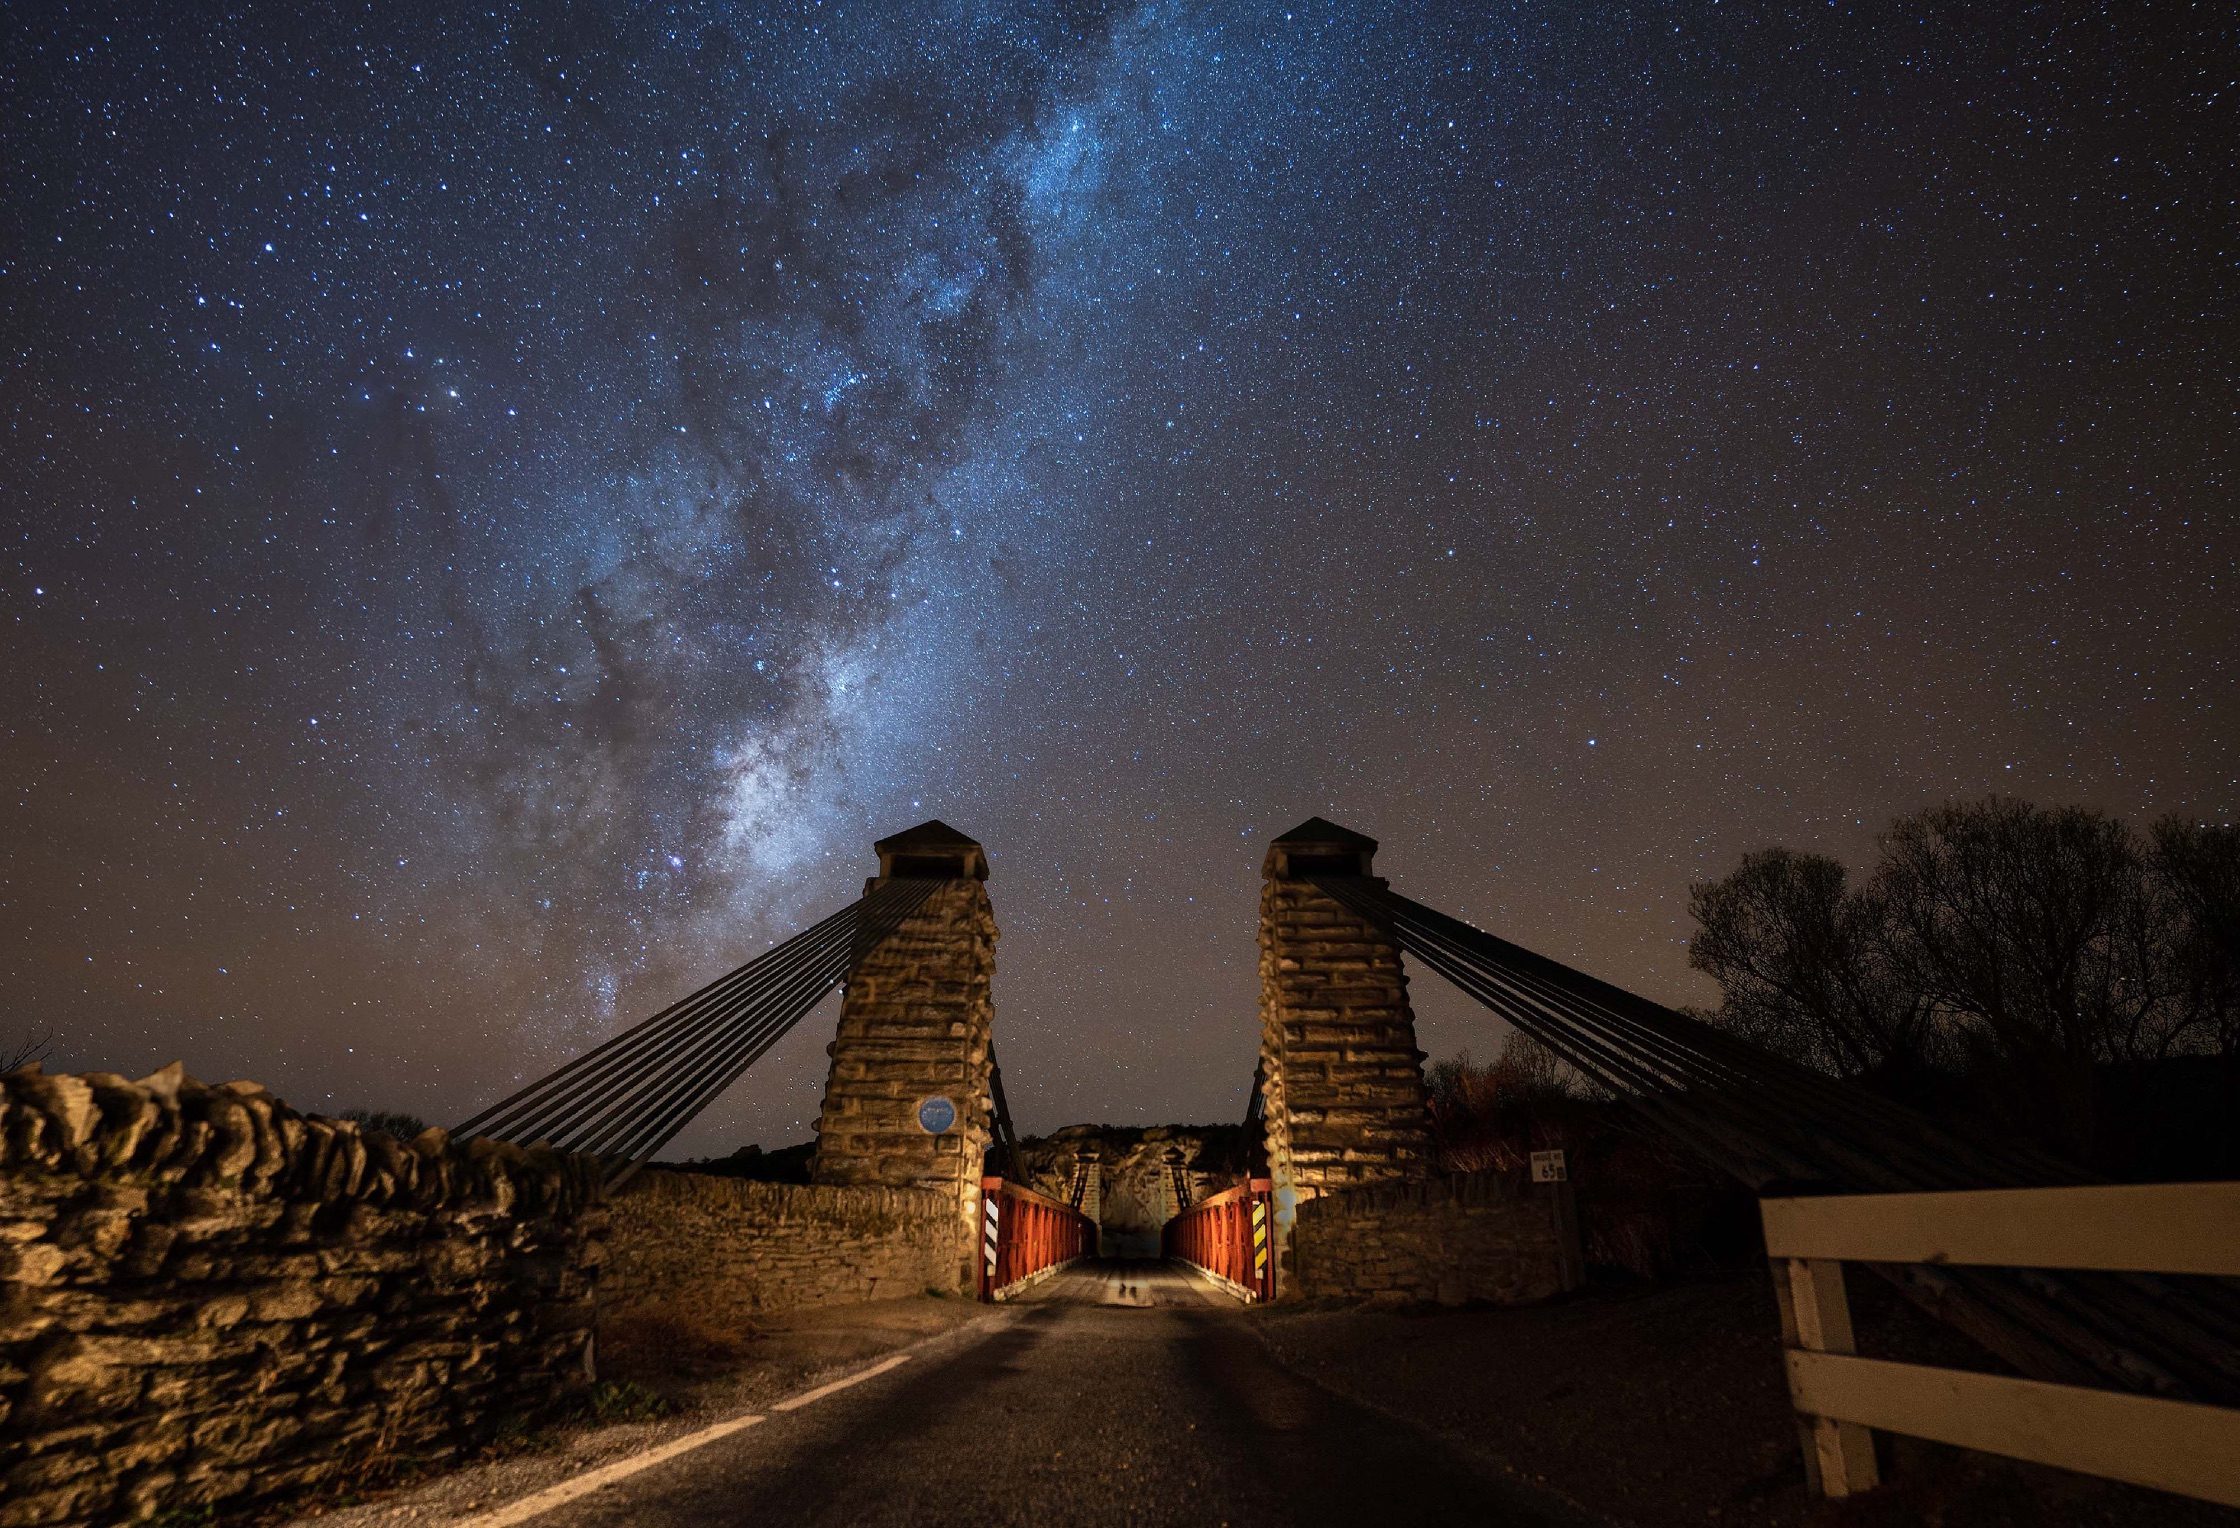 Ophir Bridge under the Milky Way by John Ecksmann